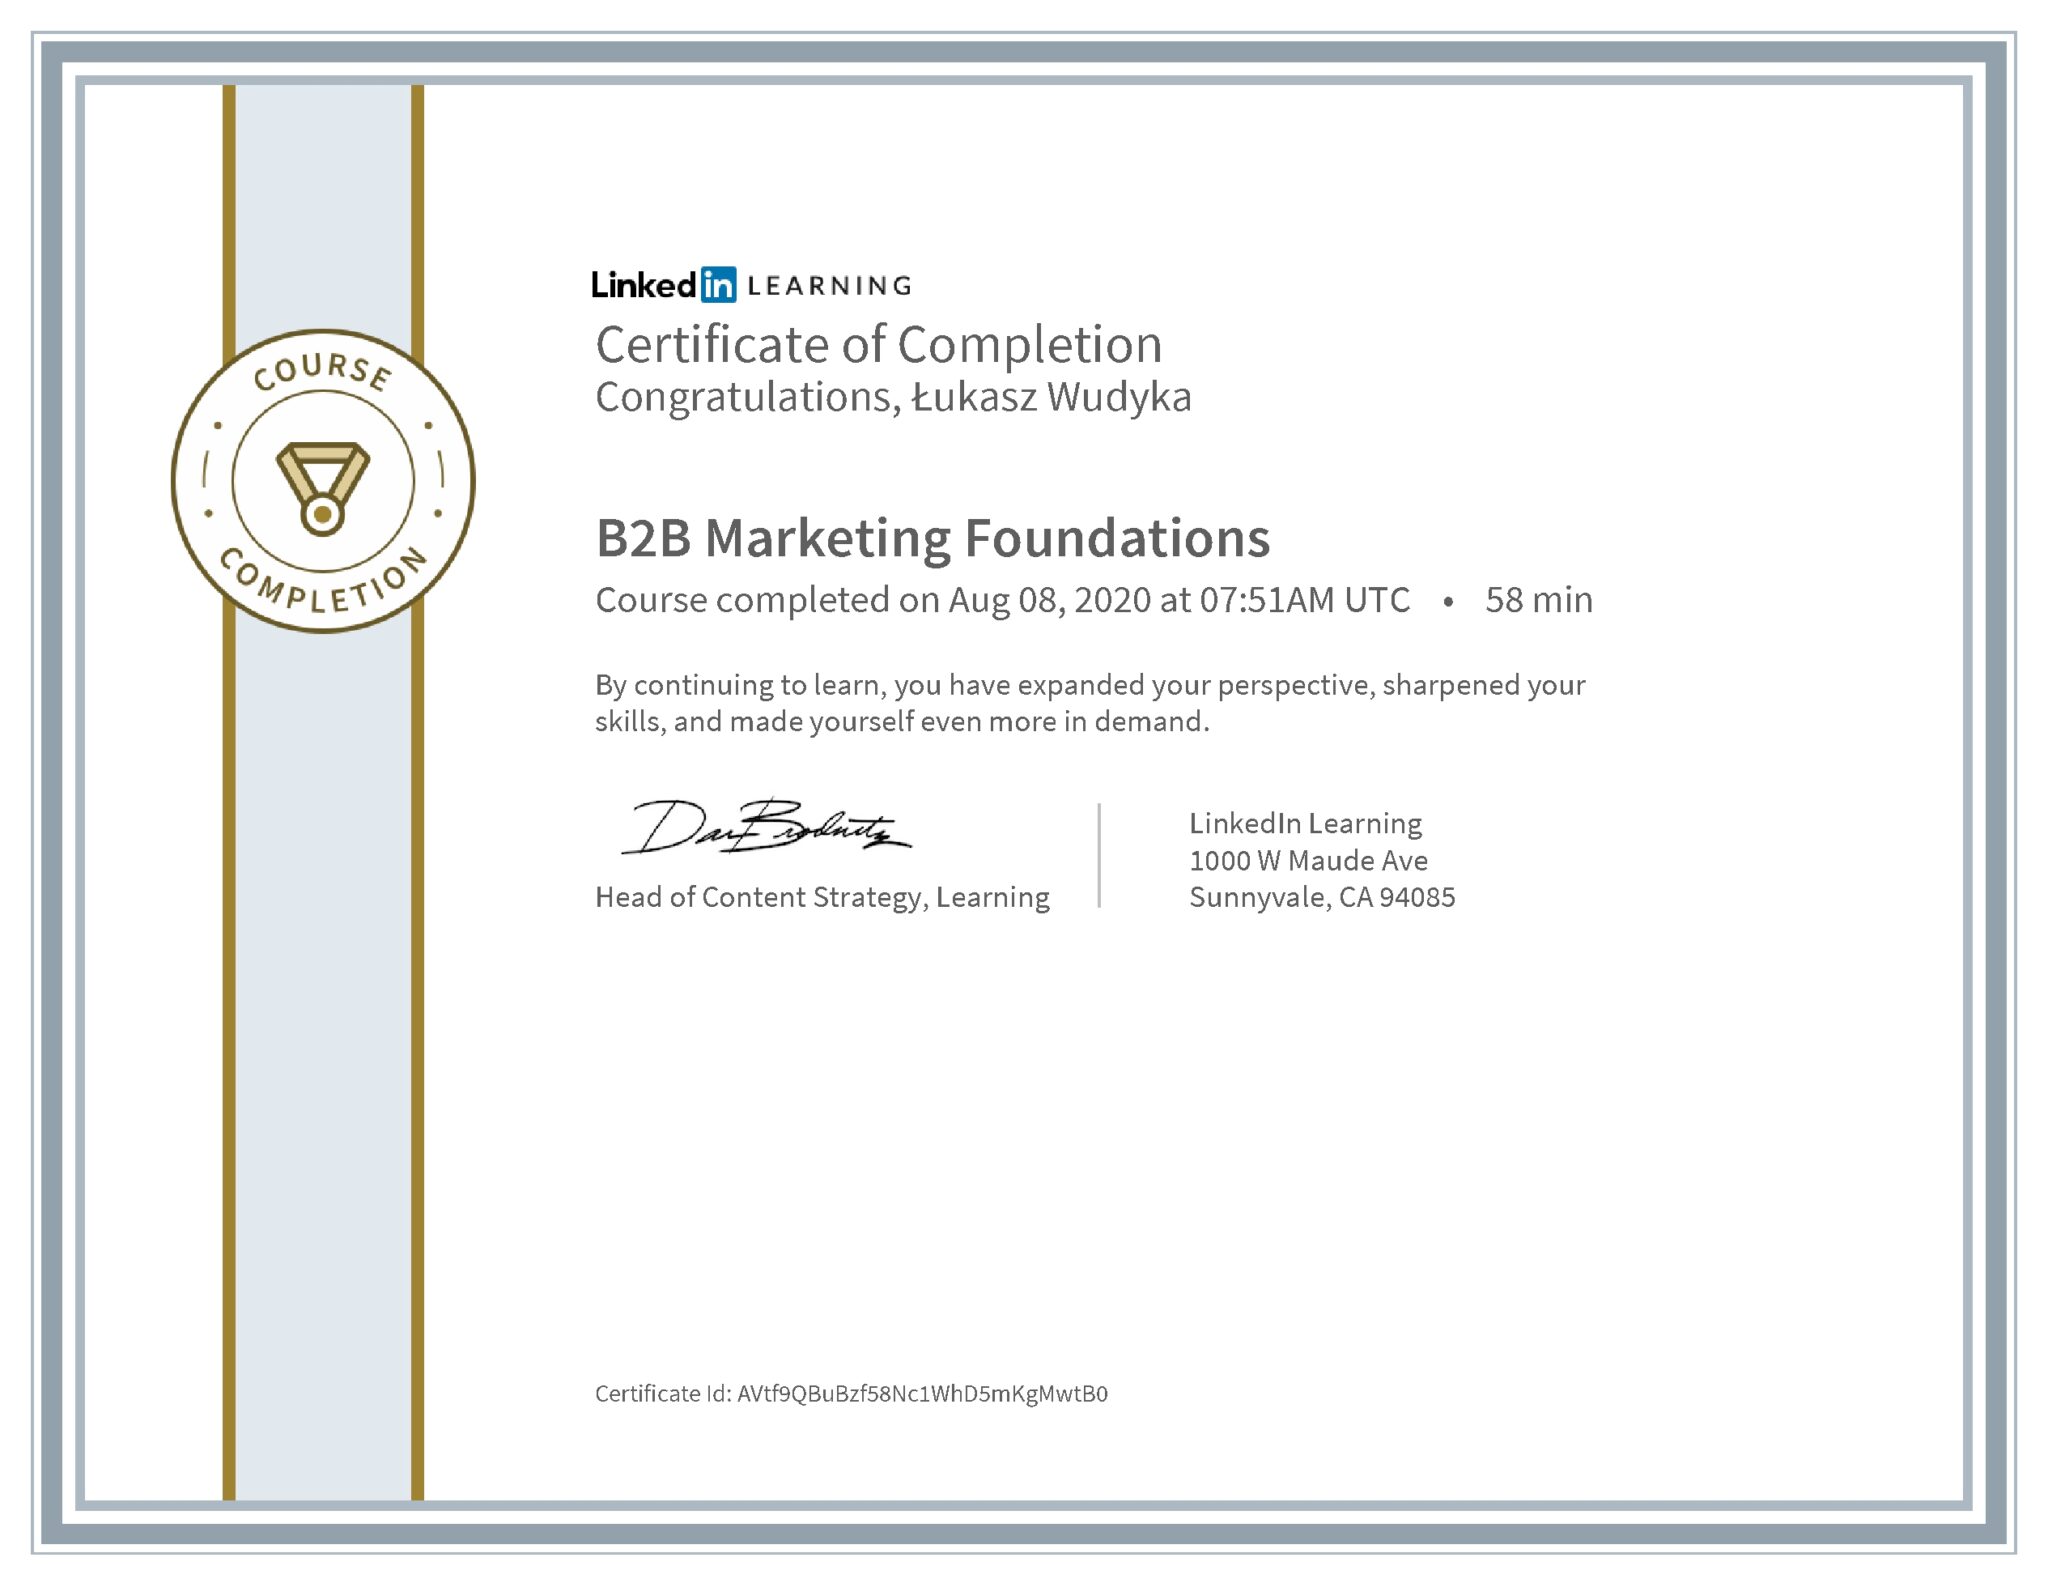 Łukasz Wudyka certyfikat LinkedIn B2B Marketing Foundations